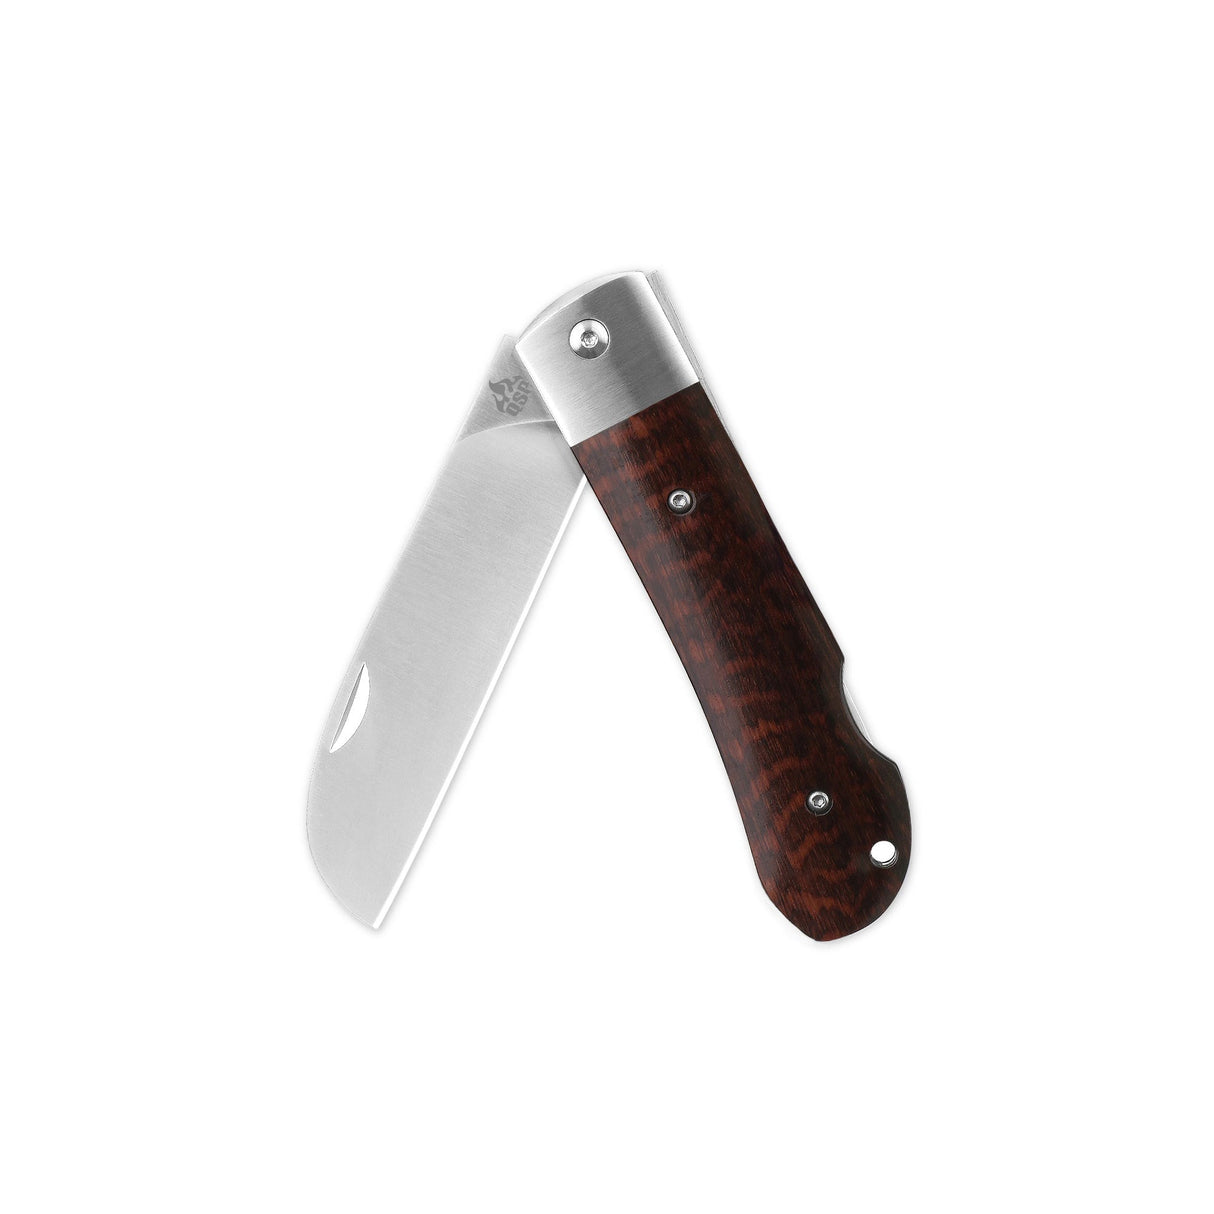 QSP Worker Lock Back Pocket Knife Böhler N690 Blade Snakewood Handle